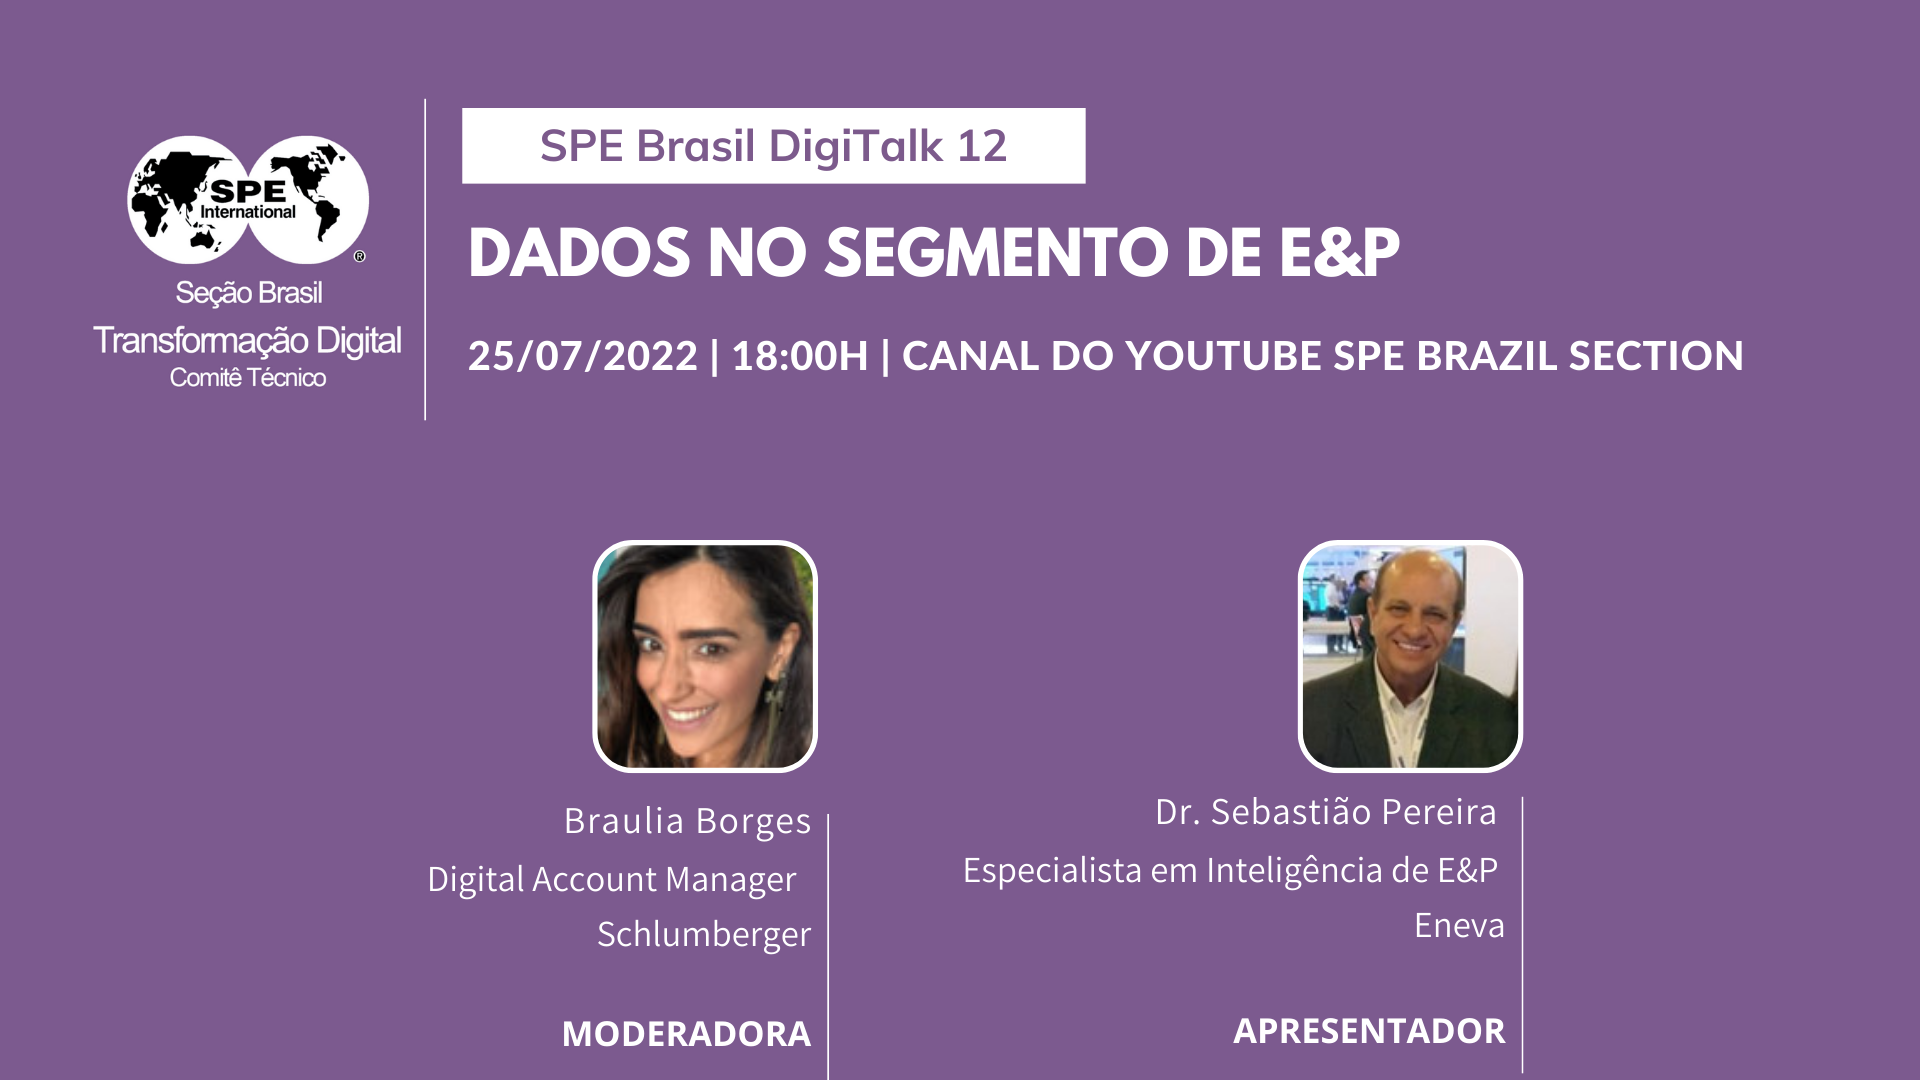 SPE Brasil DigiTalks 12 – “Dados no segmento de E&P”